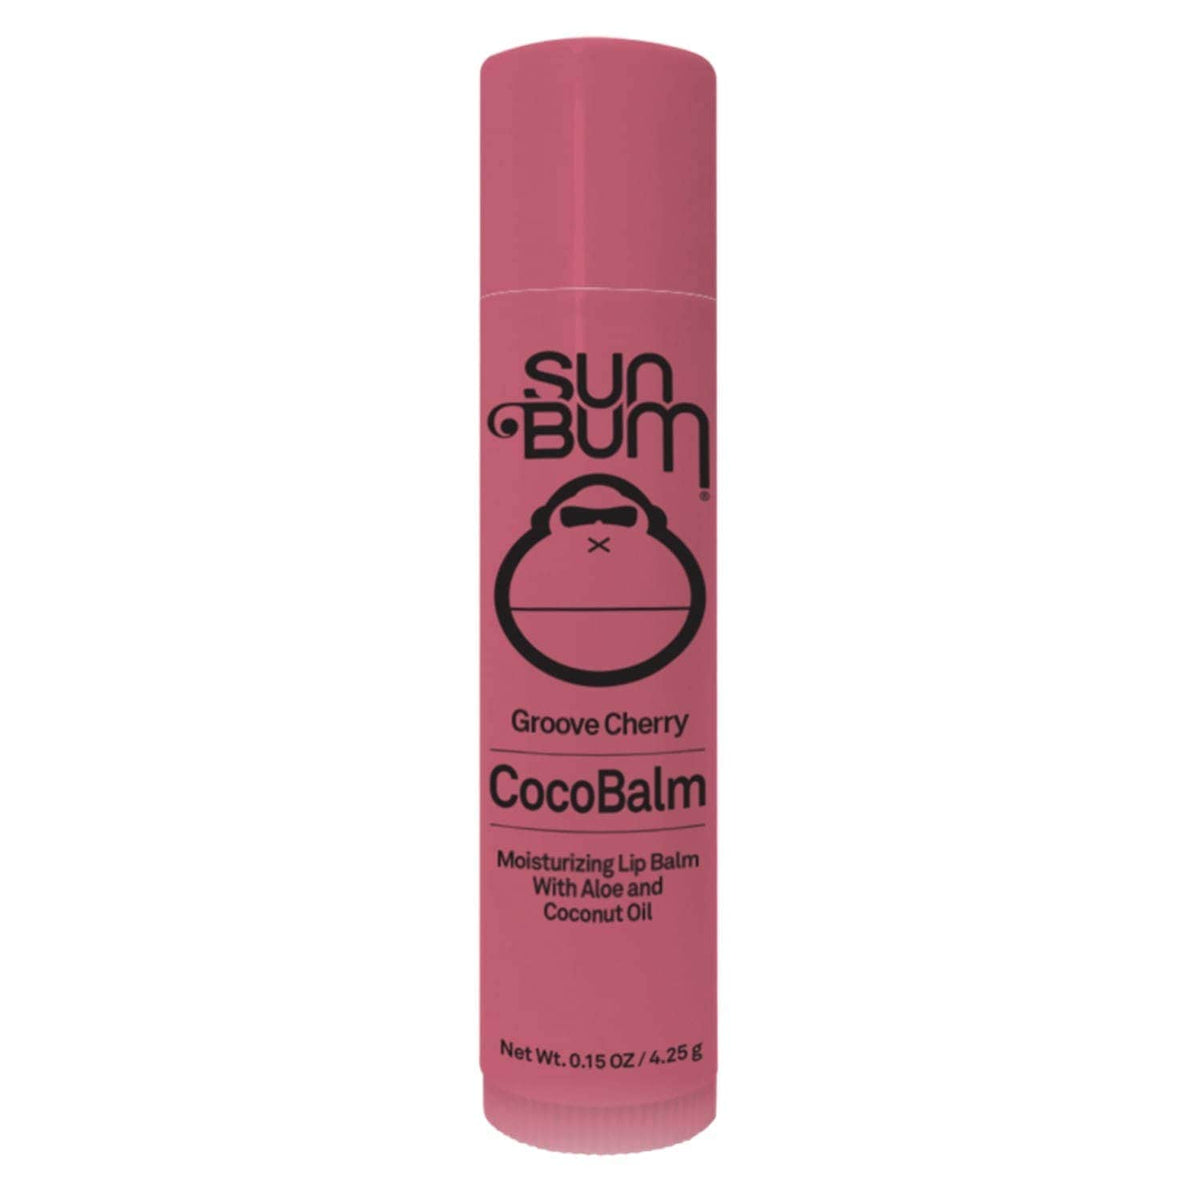 Sun Bum CocoBalm Moisturising Lip Balm - Groove Cherry - After Sun by Sun Bum 4.25g